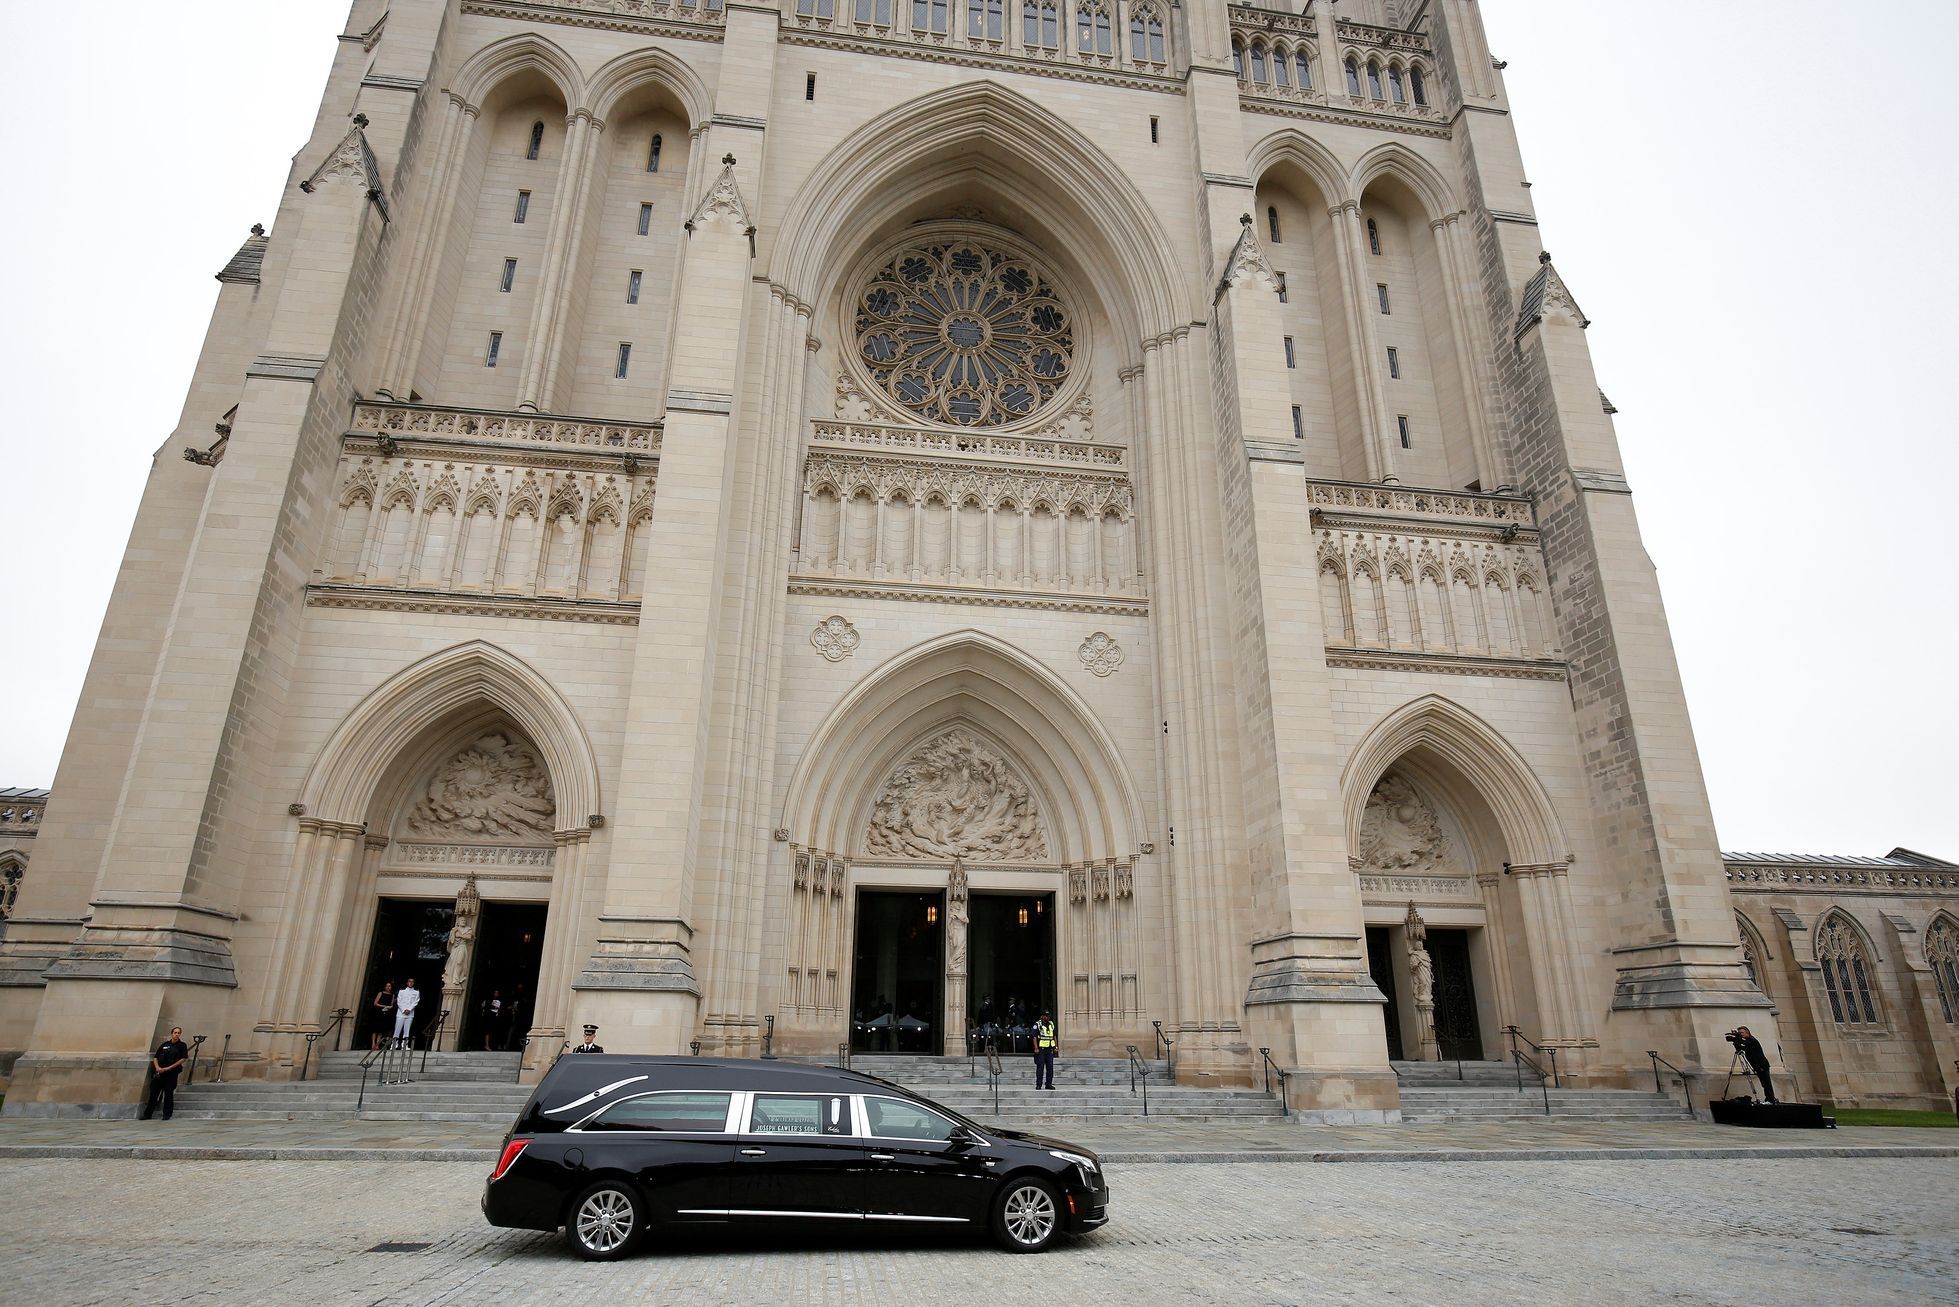 Rozloučení s McCainem ve washingtonské národní katedrále